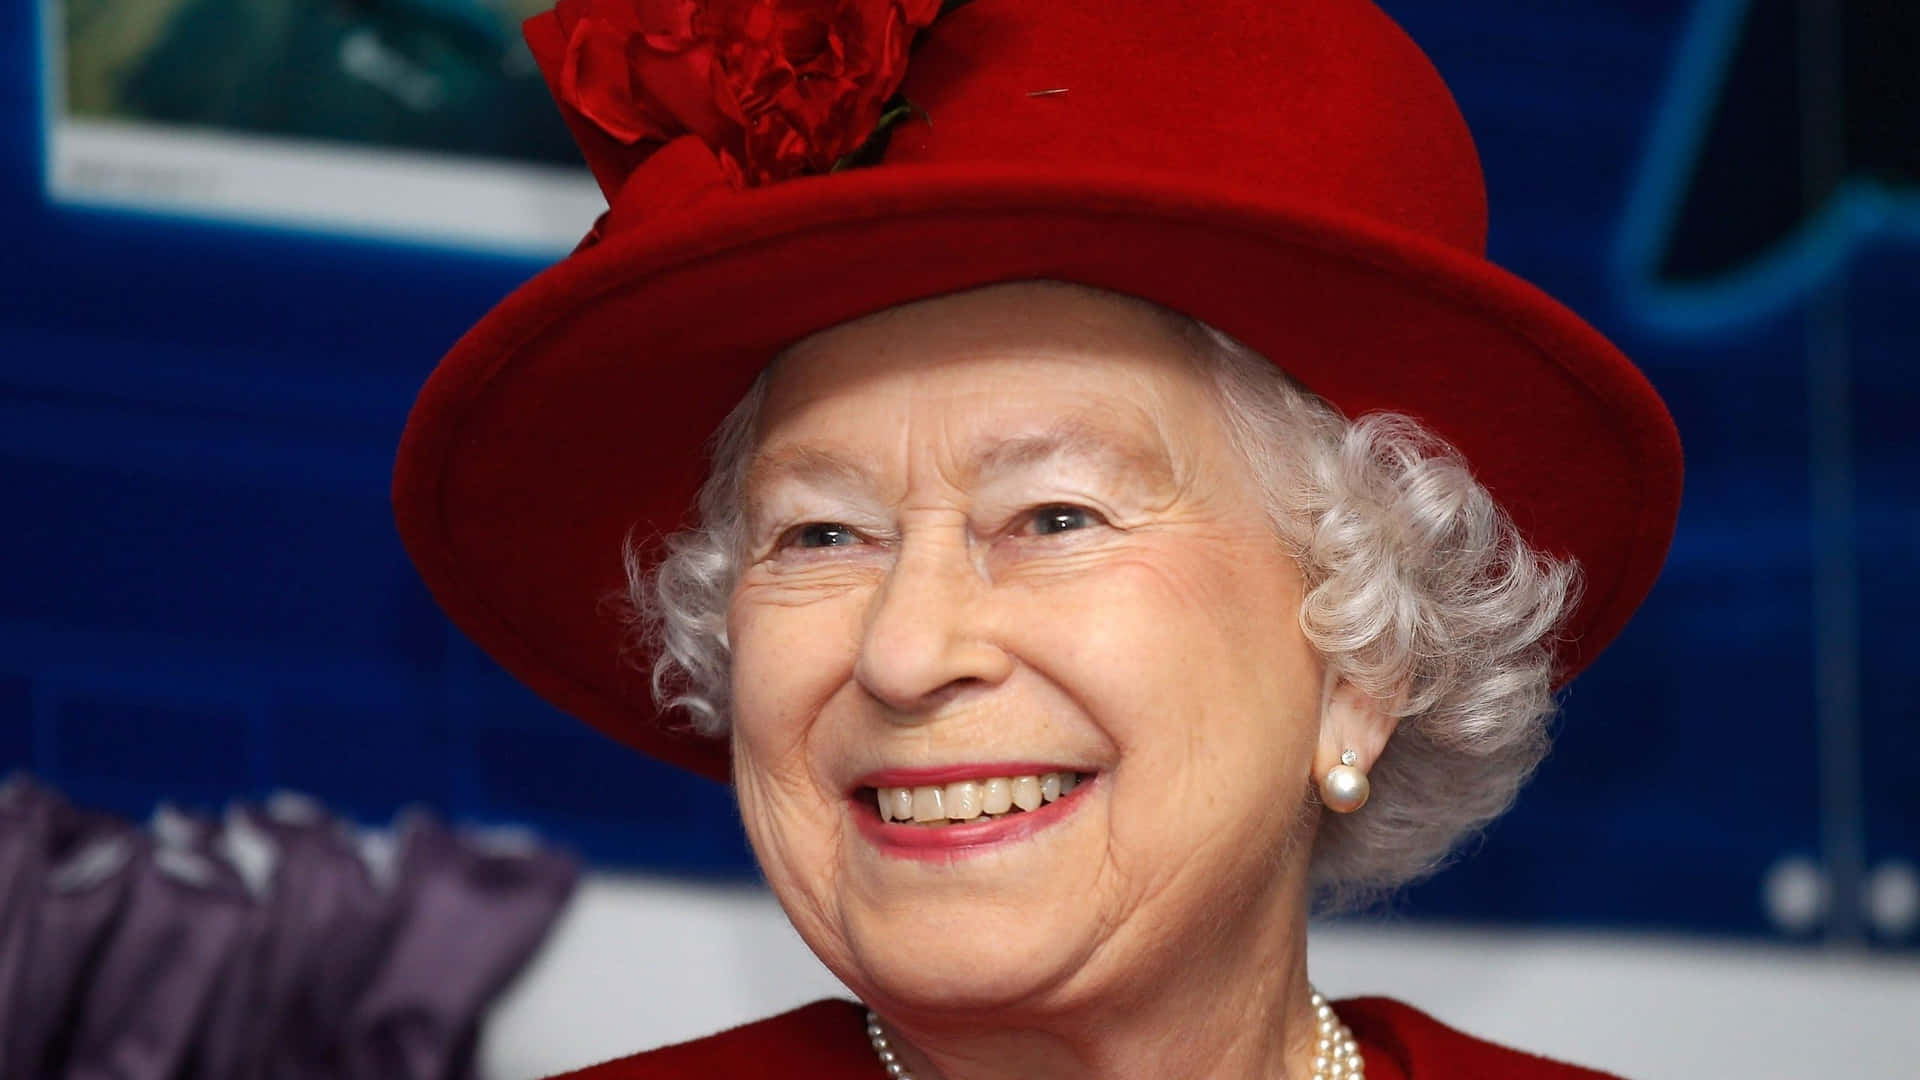 Bildvon Queen Elizabeth In 2560 X 1440 Auflösung